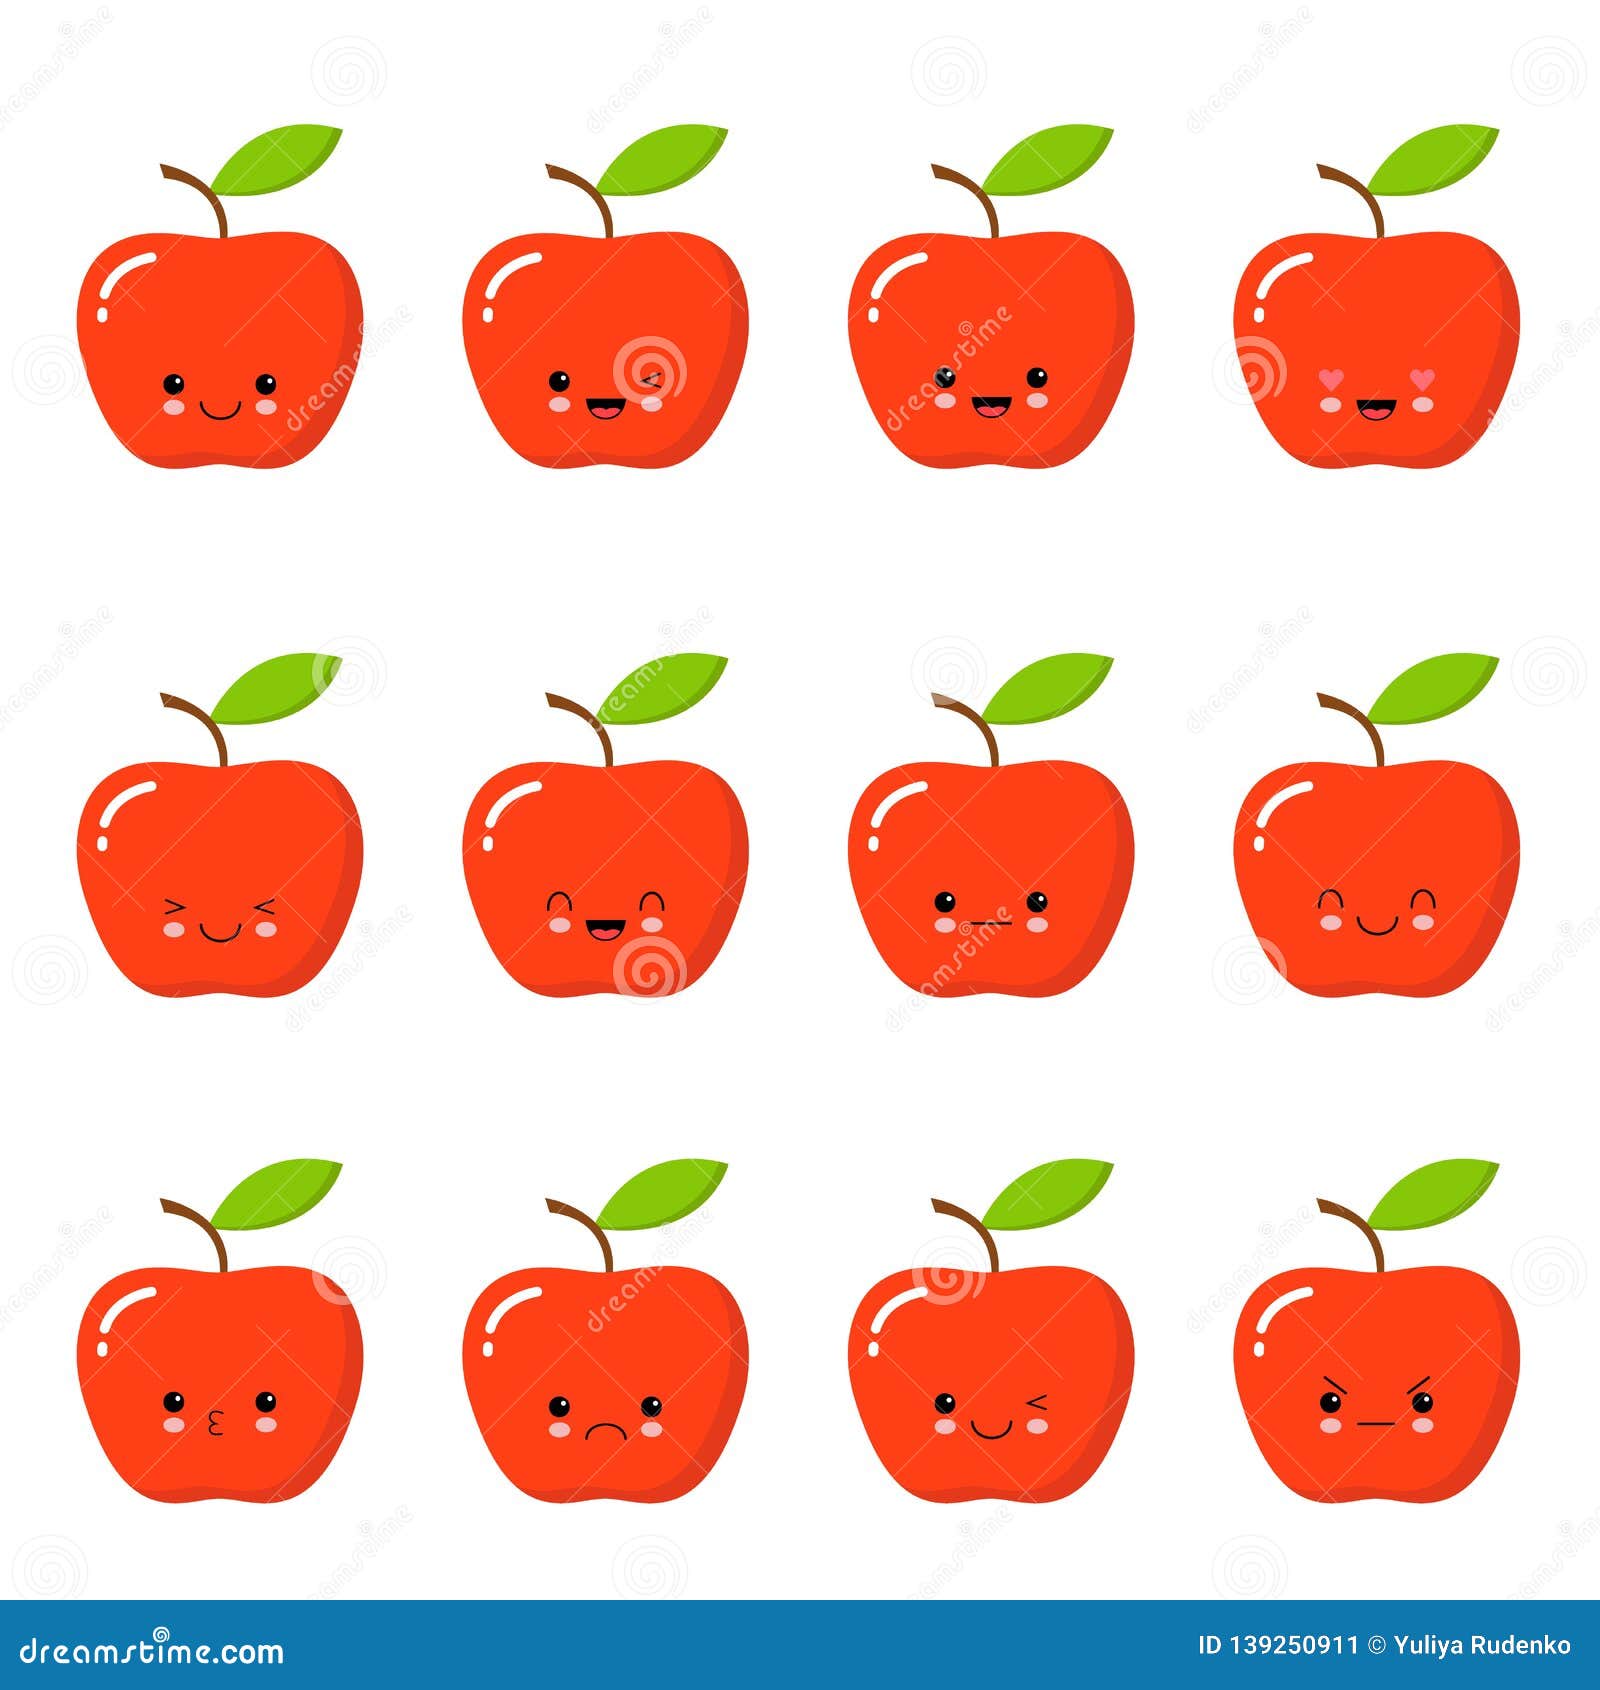 Sự dễ thương của táo đỏ chắc chắn sẽ khiến bạn cười toe toét. Những hình ảnh về loại trái cây này sẽ khiến bạn muốn hái một quả ngay lập tức. Xem ngay!